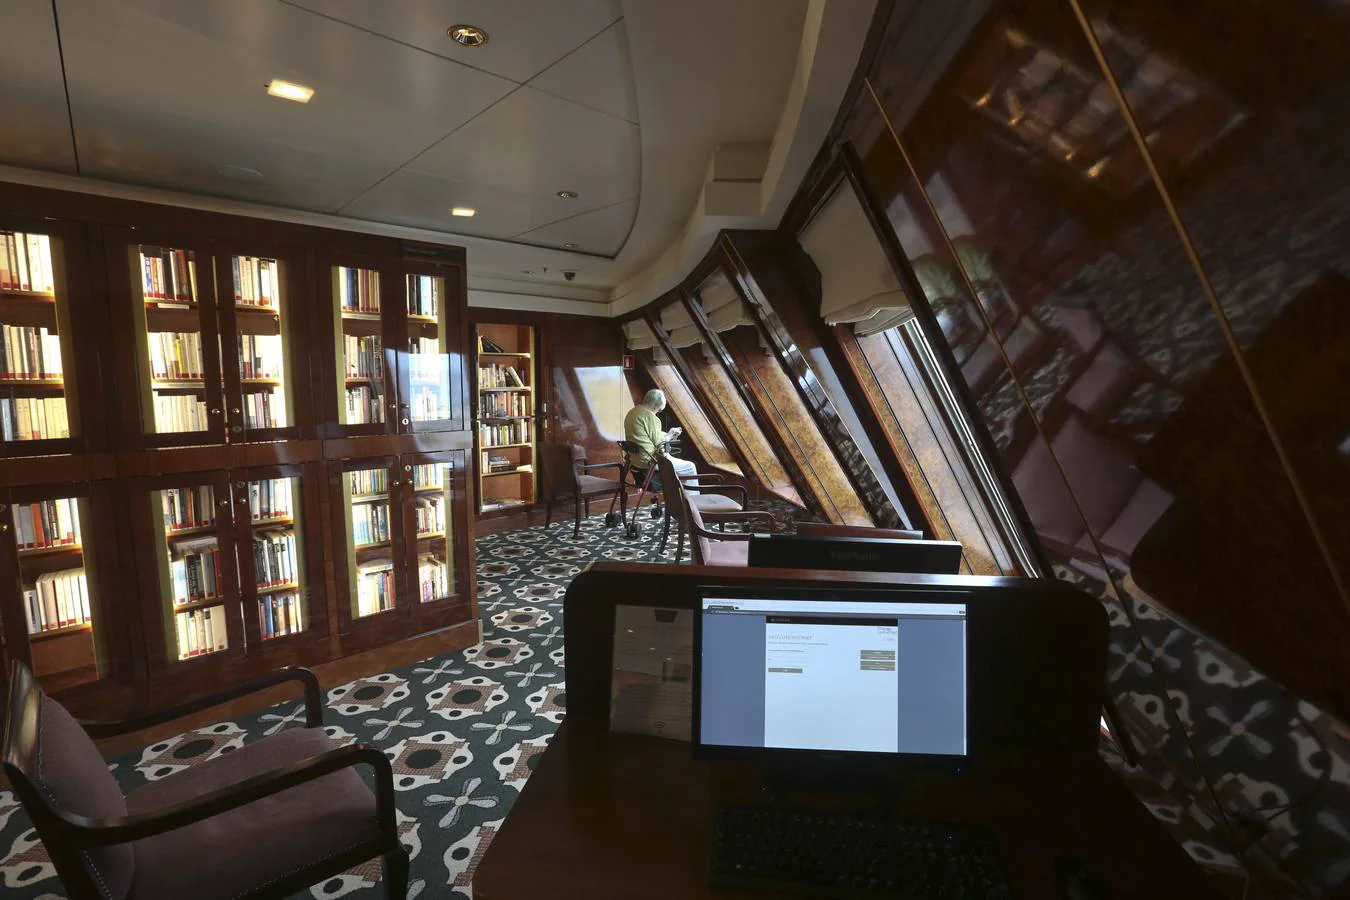 FOTOS: Visita al interior del lujoso buque &#039;Queen Mary 2&#039;